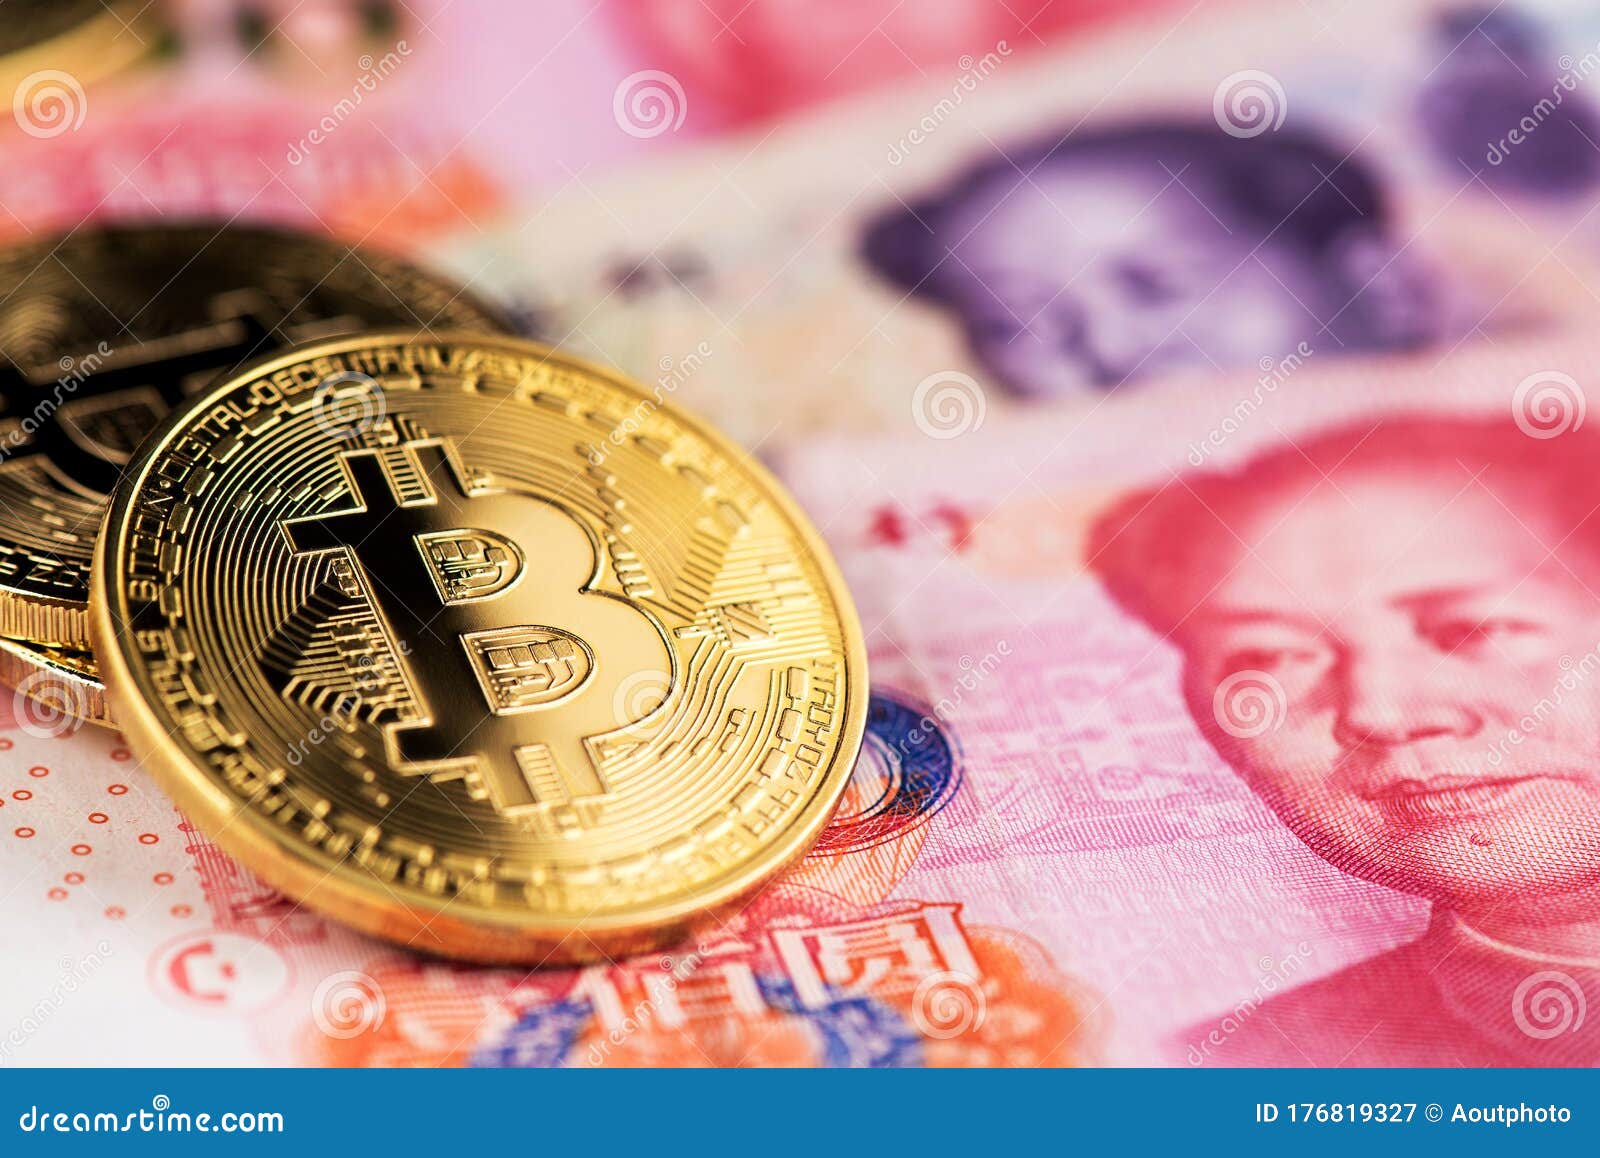 yuan bitcoin